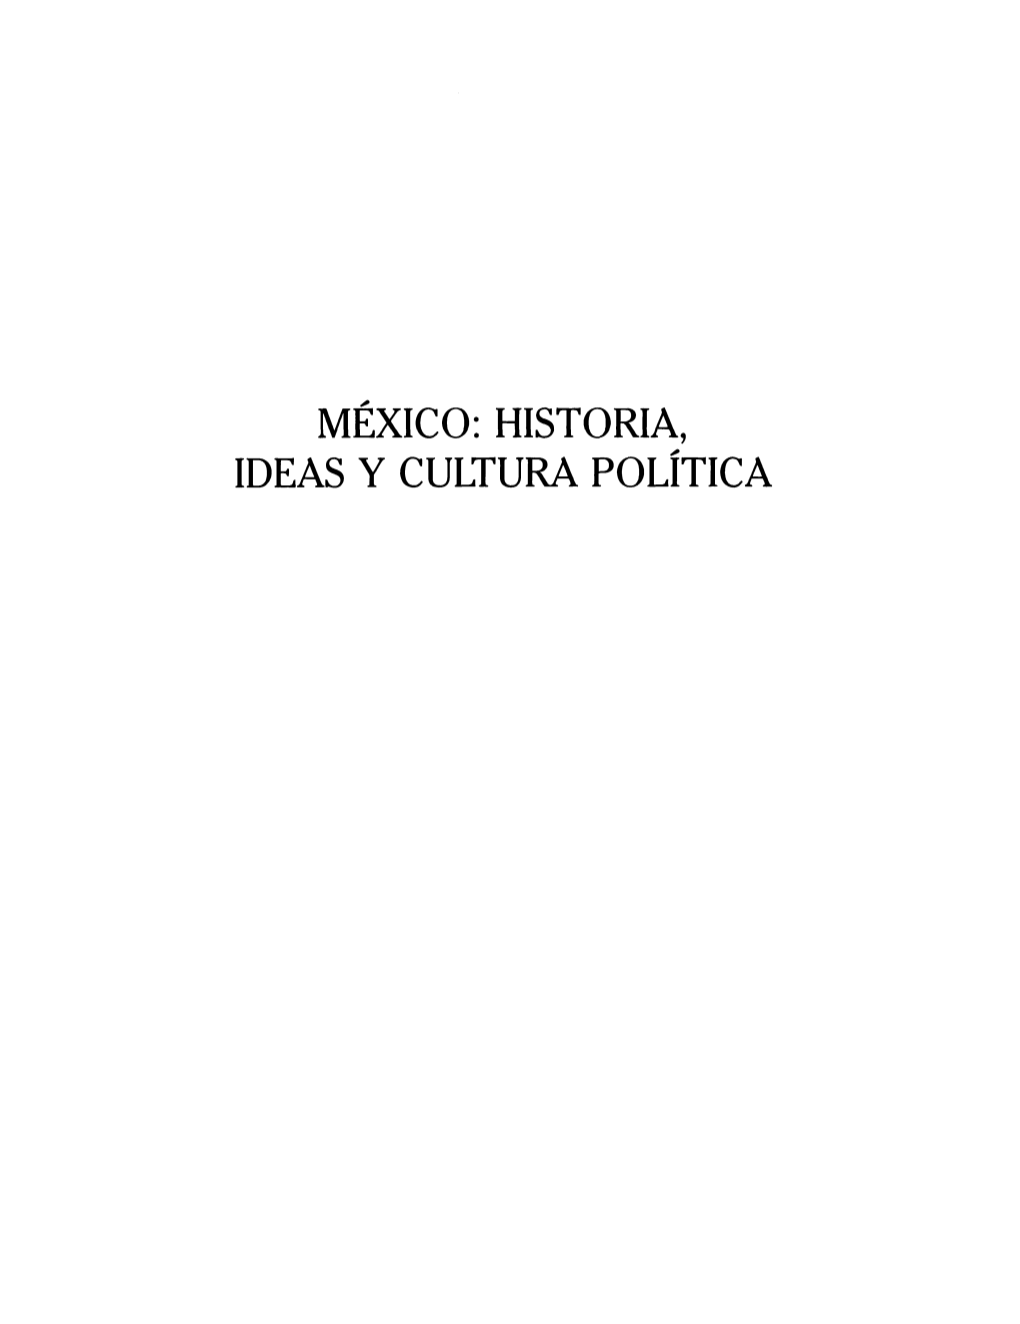 HISTORIA, IDEAS Y CULTURA POLÍTICA José Vasconcelos, Luis Cabrera Y La Revolución Mexicana